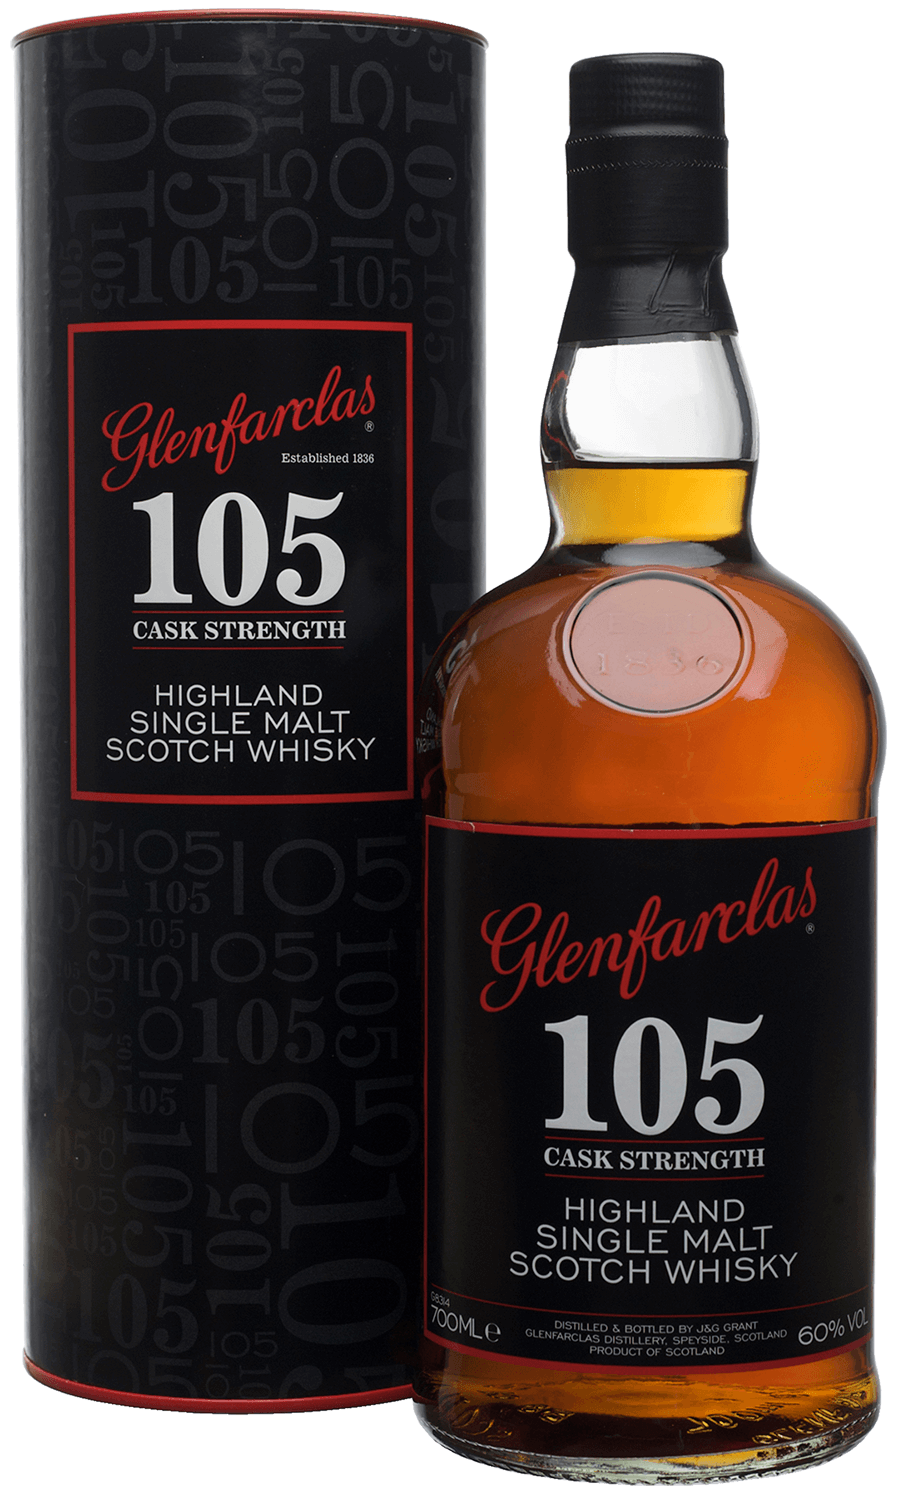 Glenfarclas 105 Single Malt Scotch Whisky (gift box) glenfarclas single malt scotch whisky 10 y o